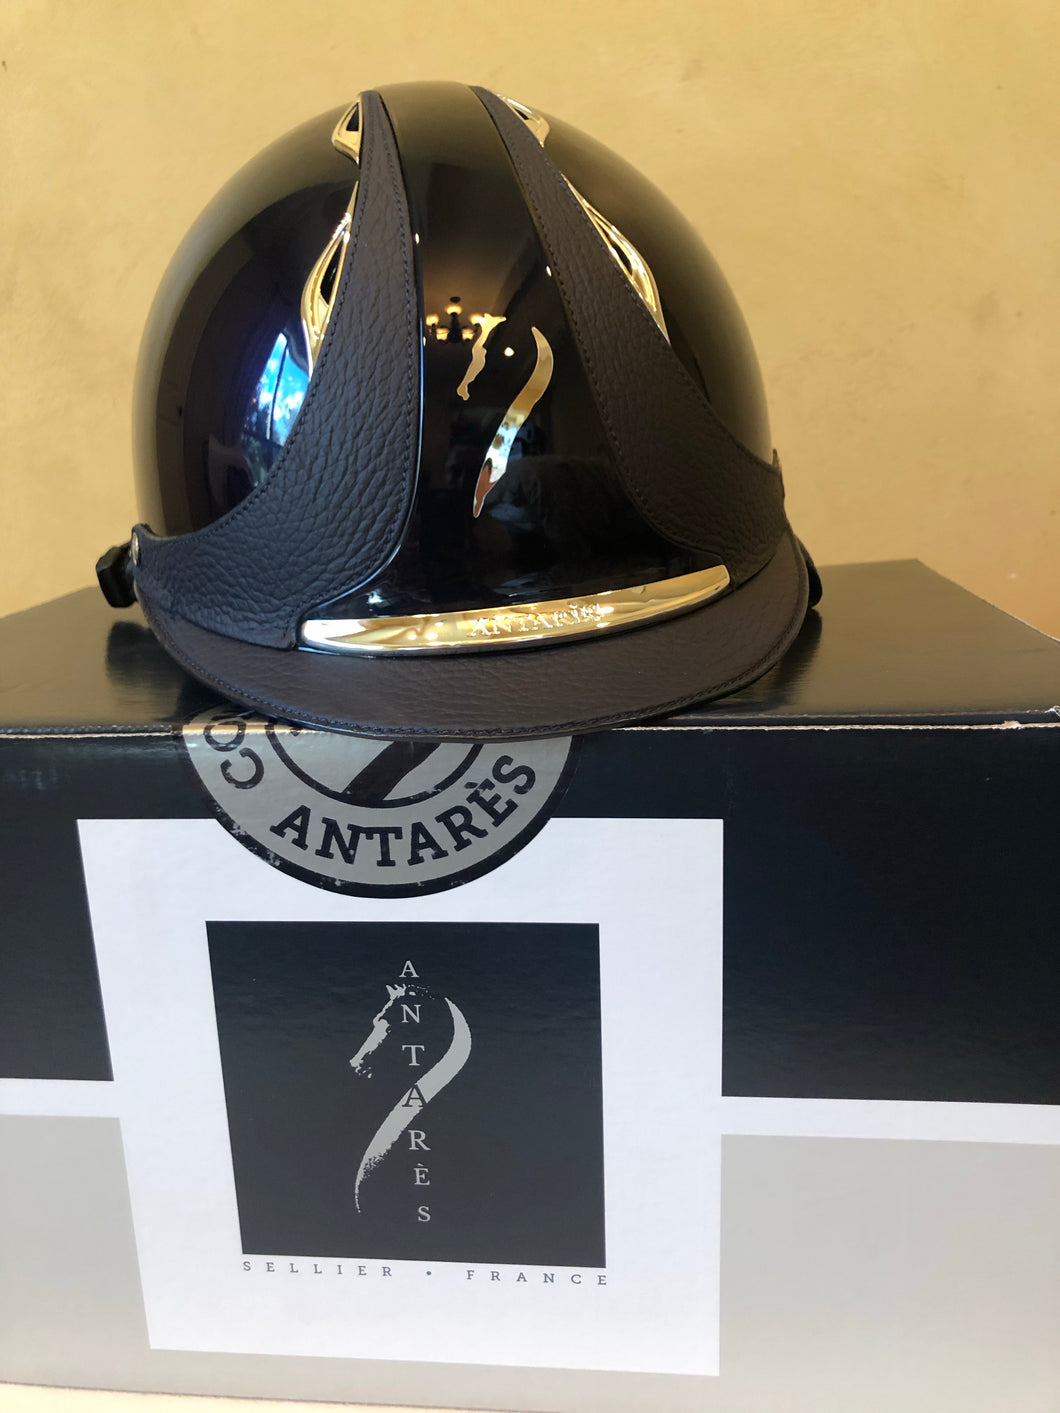 Antares Premium Blue Glossy Helmet - Size S (54-56.5”)